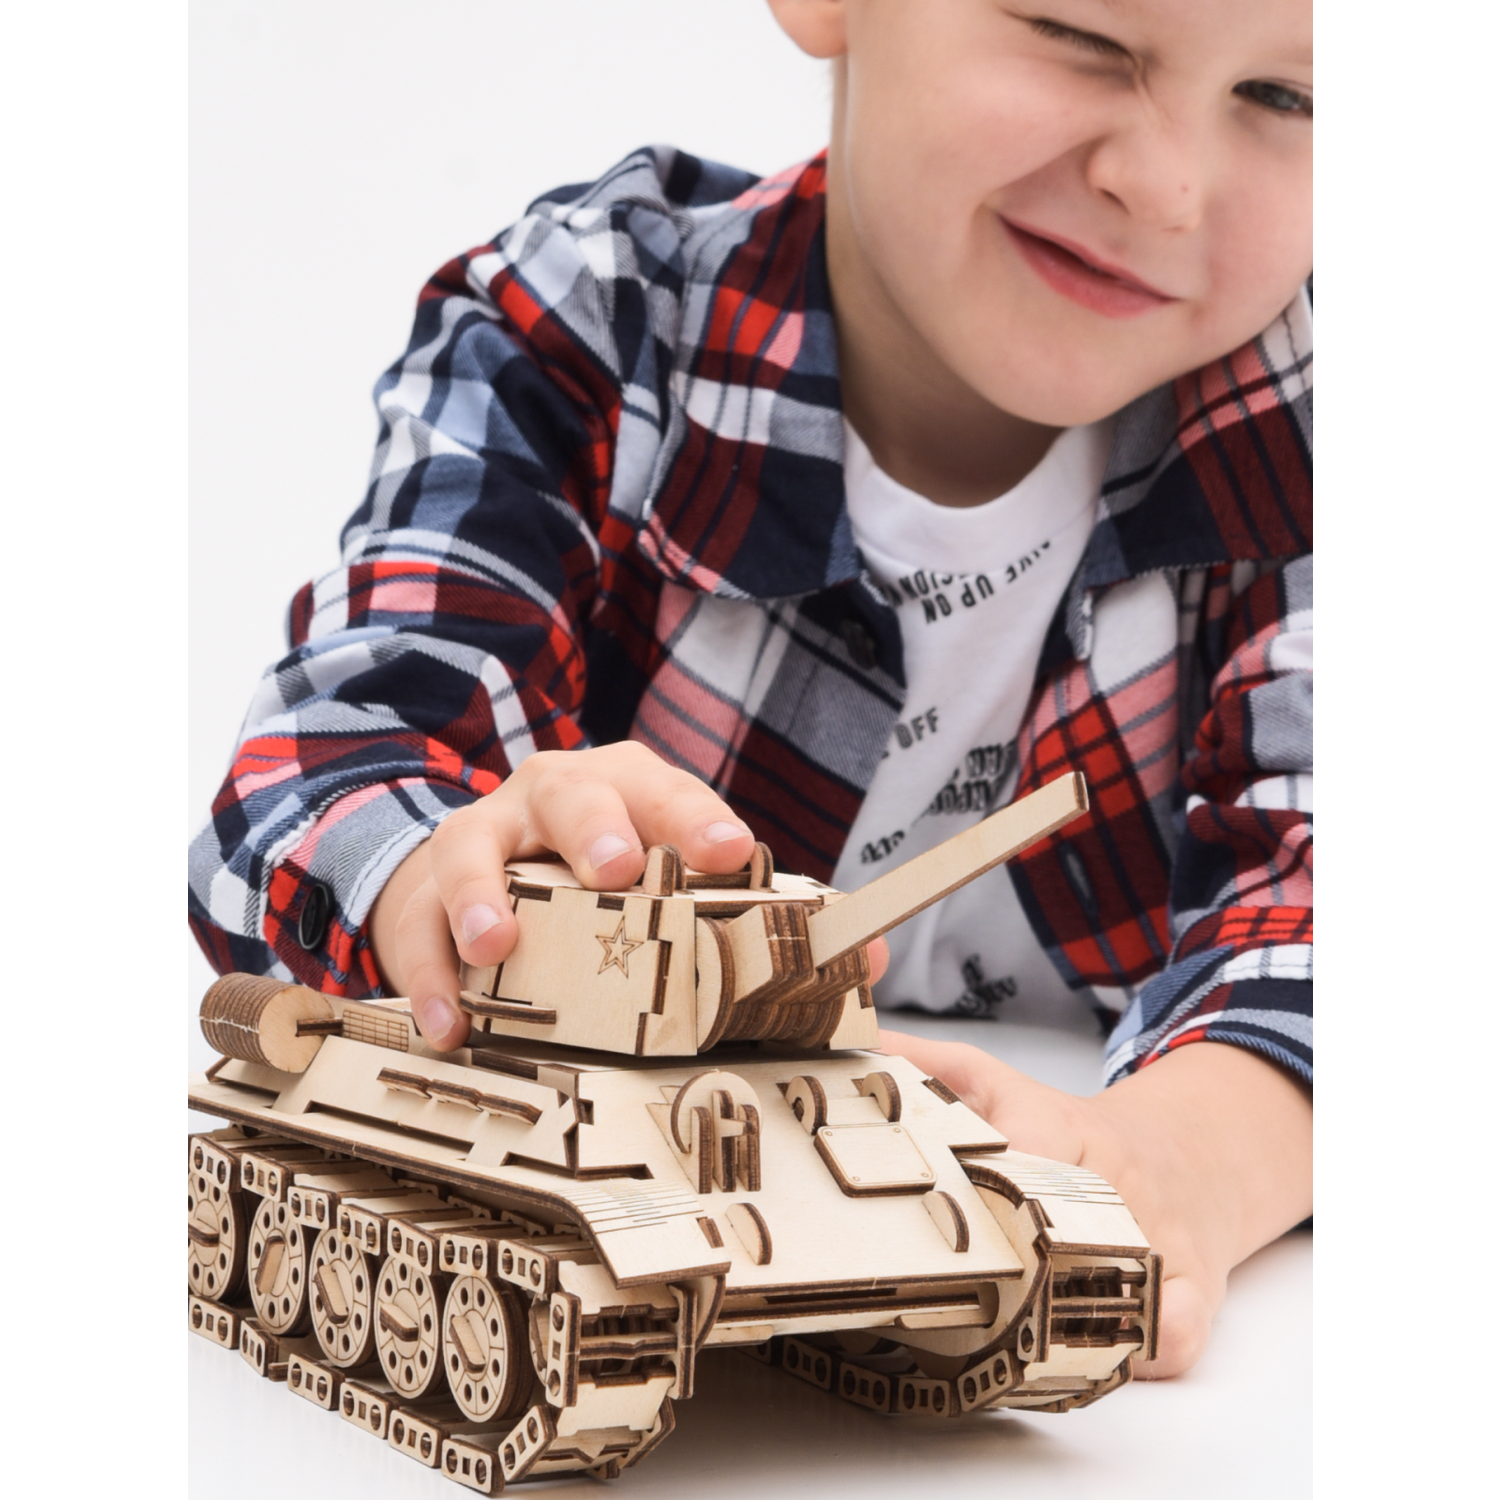 Сборная модель ГРАТ Деревянный Танк танк - фото 9